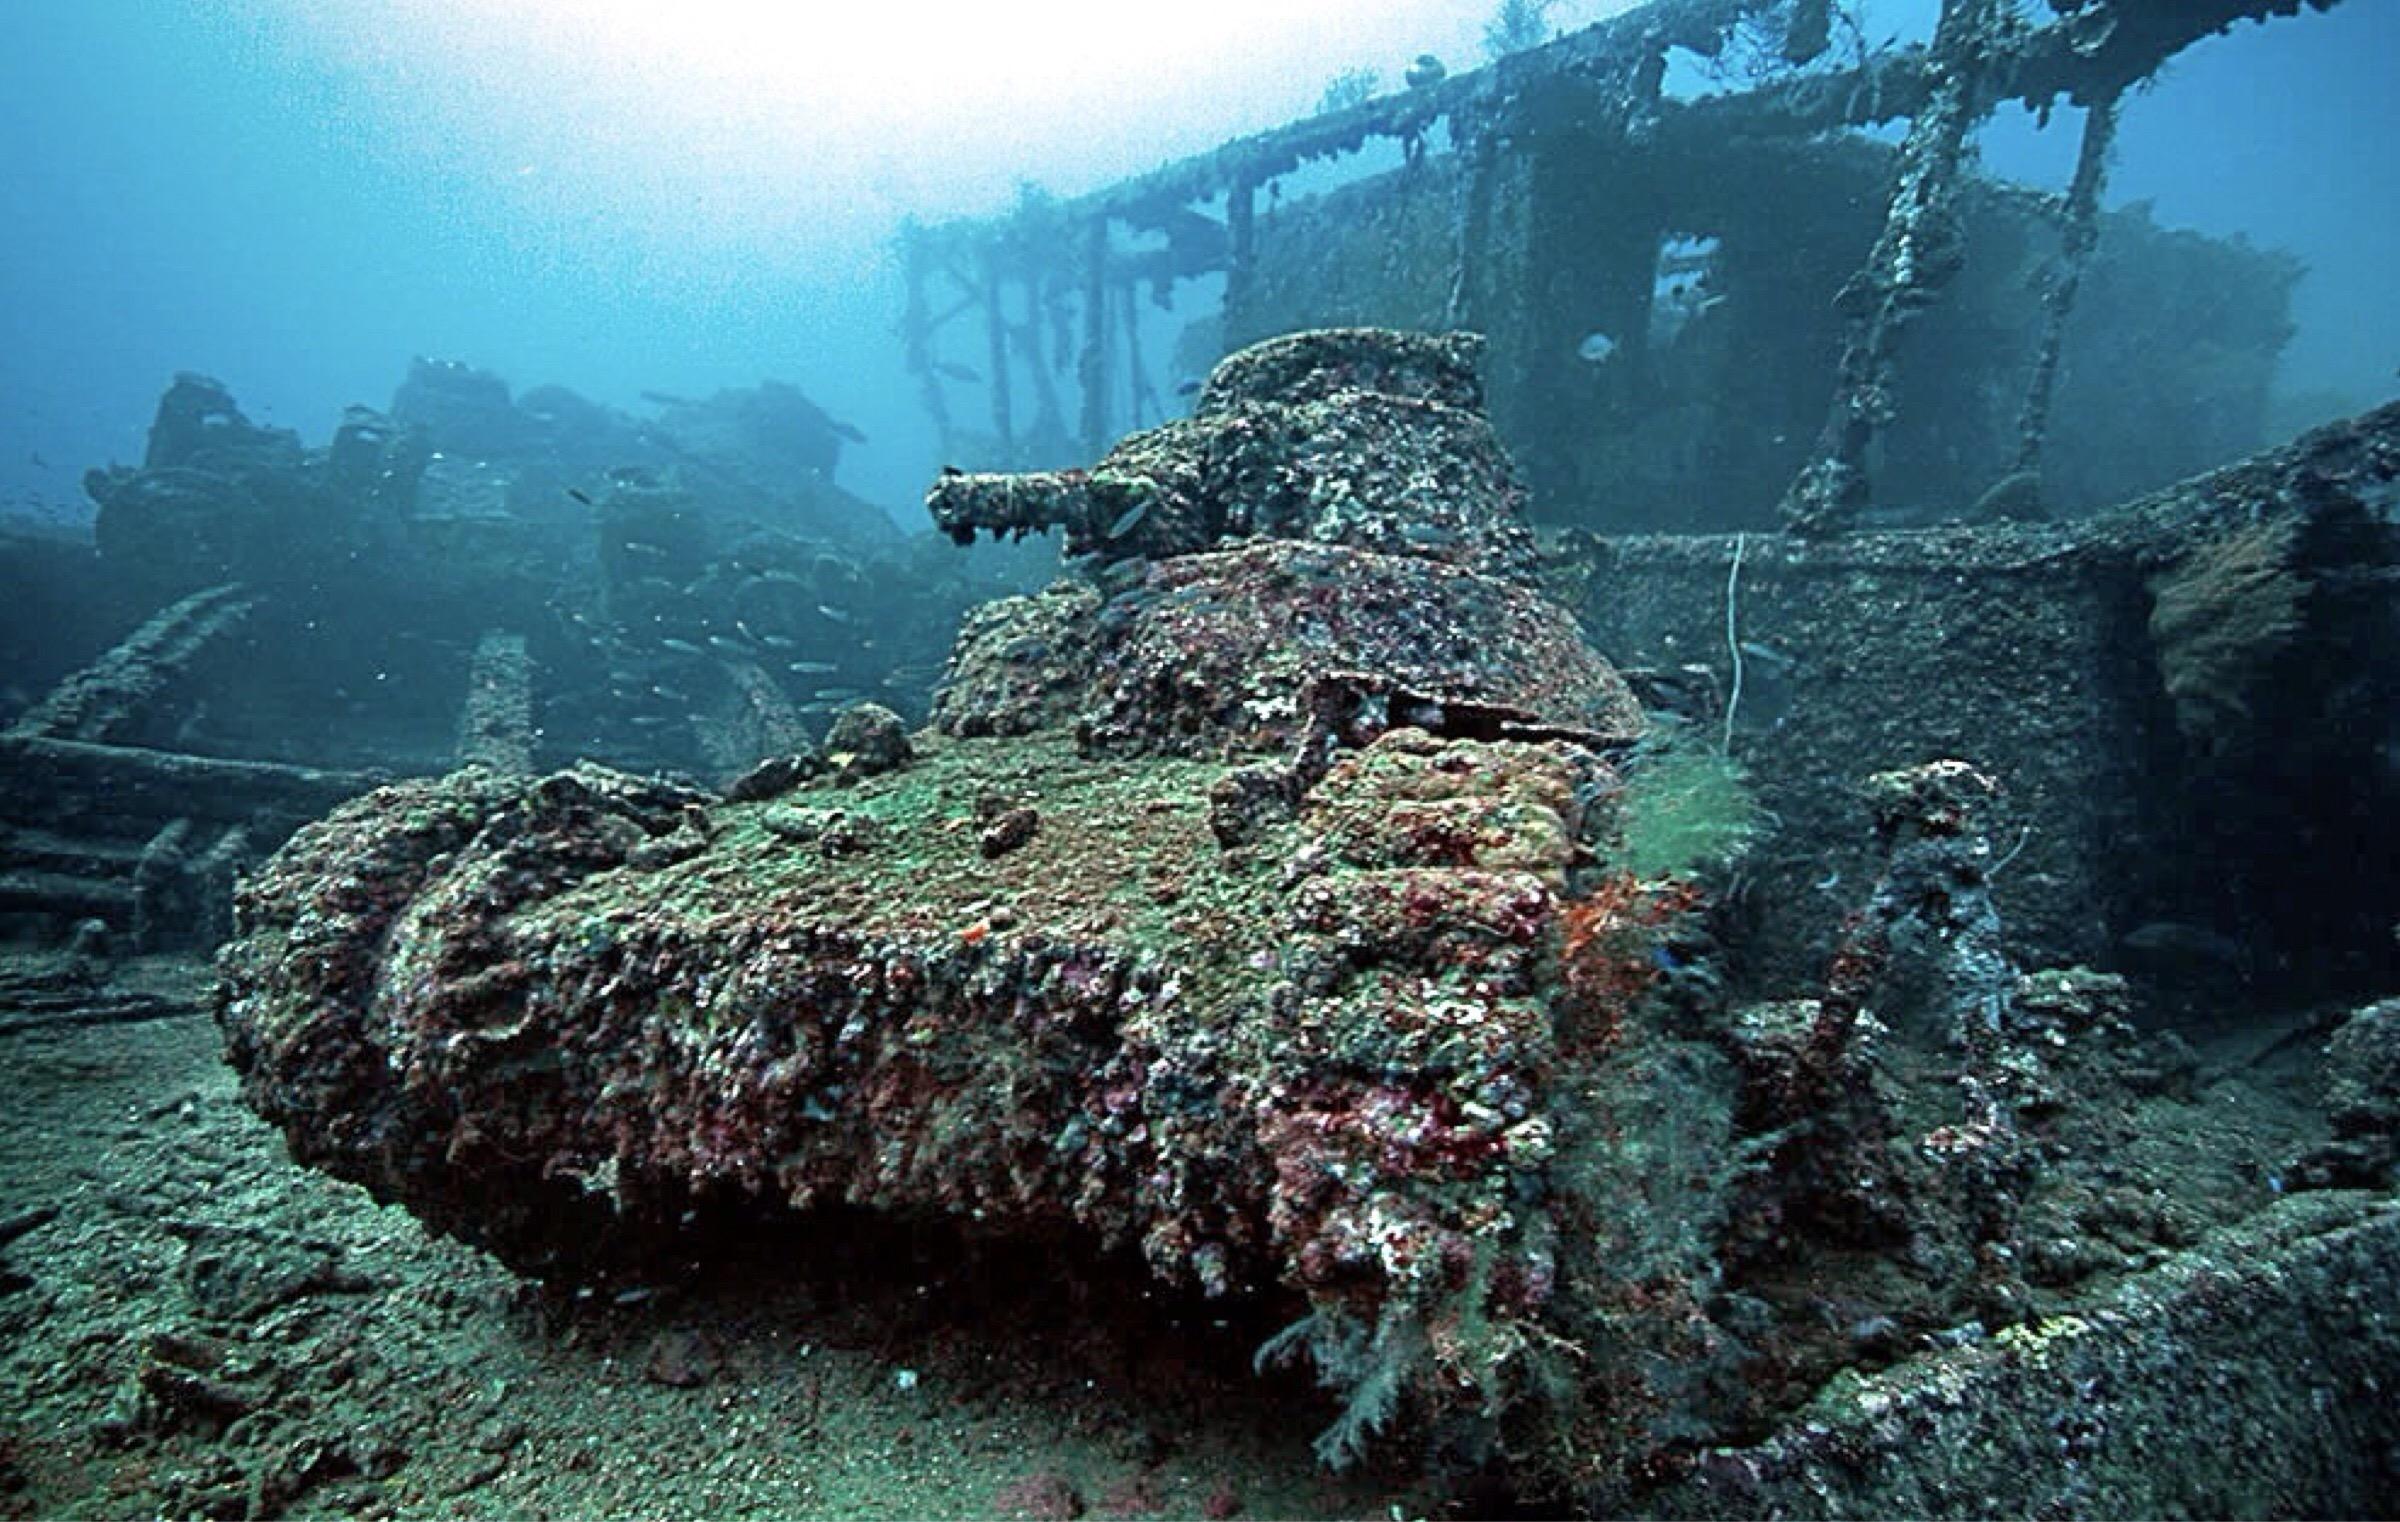 Корабль тихого океана. Корабль SS Thistlegorm, красное море. Лагуна трук в Микронезии. Острова Чуук подводное кладбище кораблей. Лагуна трук в тихом океане.